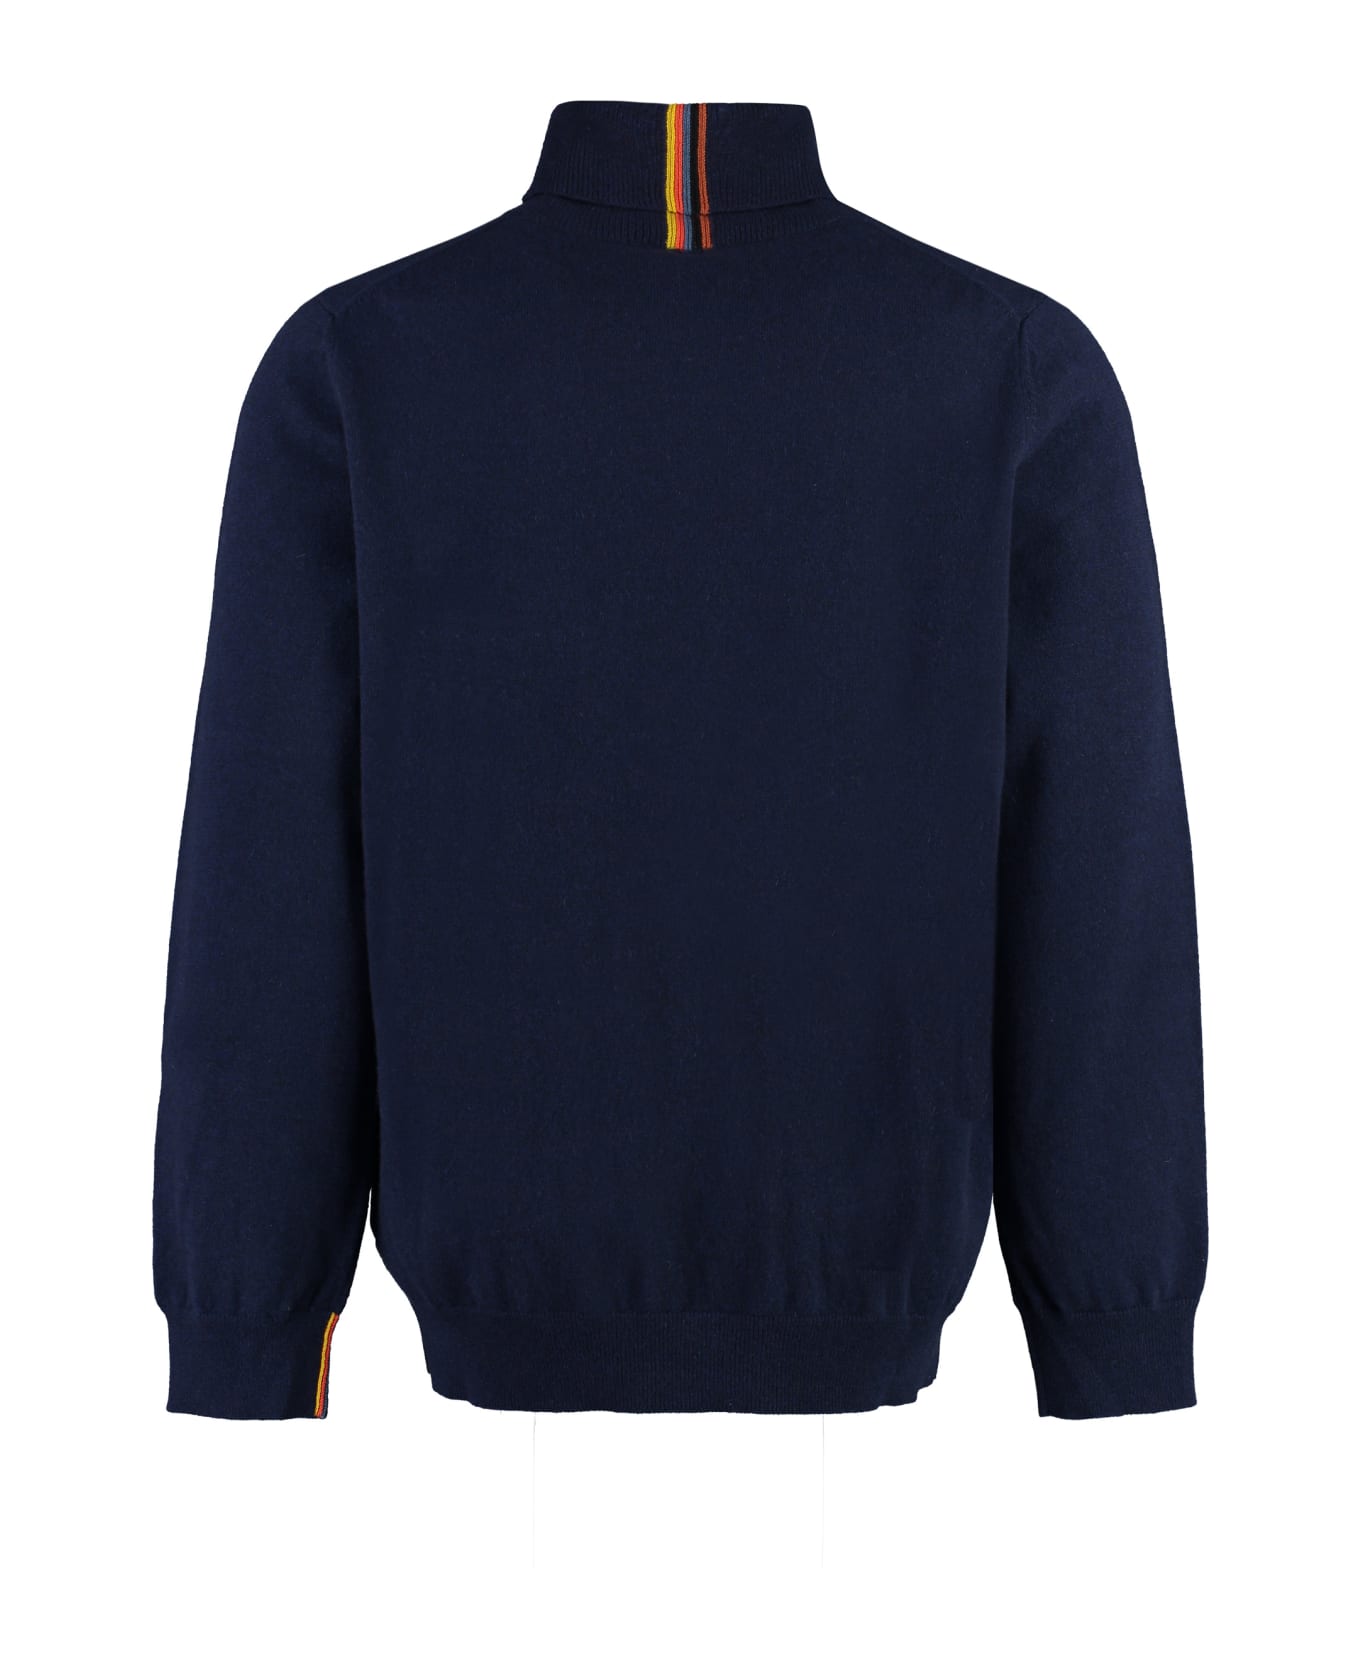 Paul Smith Cashmere Turtleneck Sweater - blue